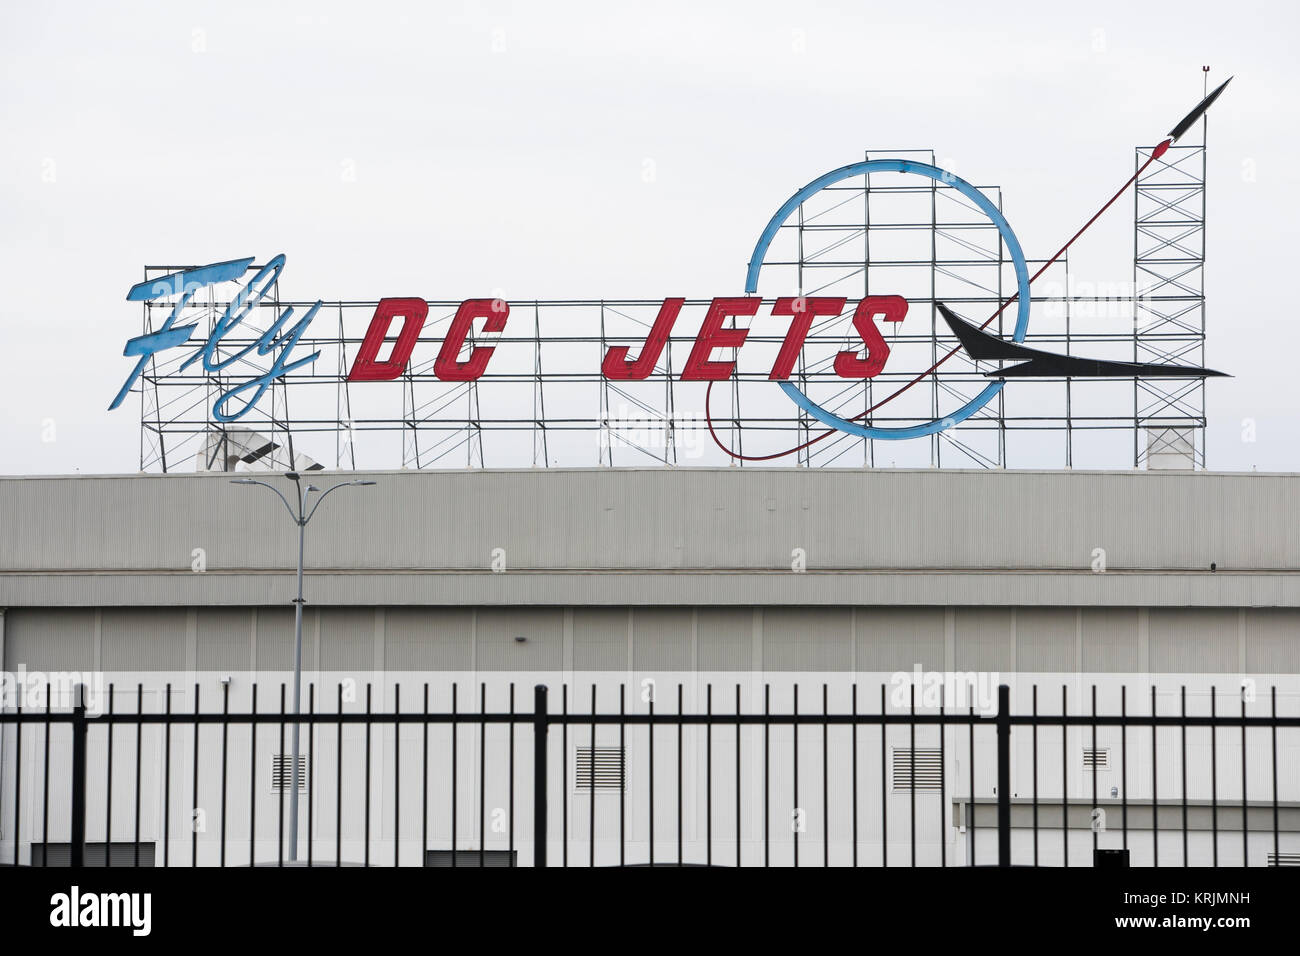 Un 'Fly' Jets DC logo néon enseigne à l'extérieur de l'ancienne usine d'avion à réaction Boeing 717 à Long Beach, Californie, le 10 décembre 2017. Banque D'Images